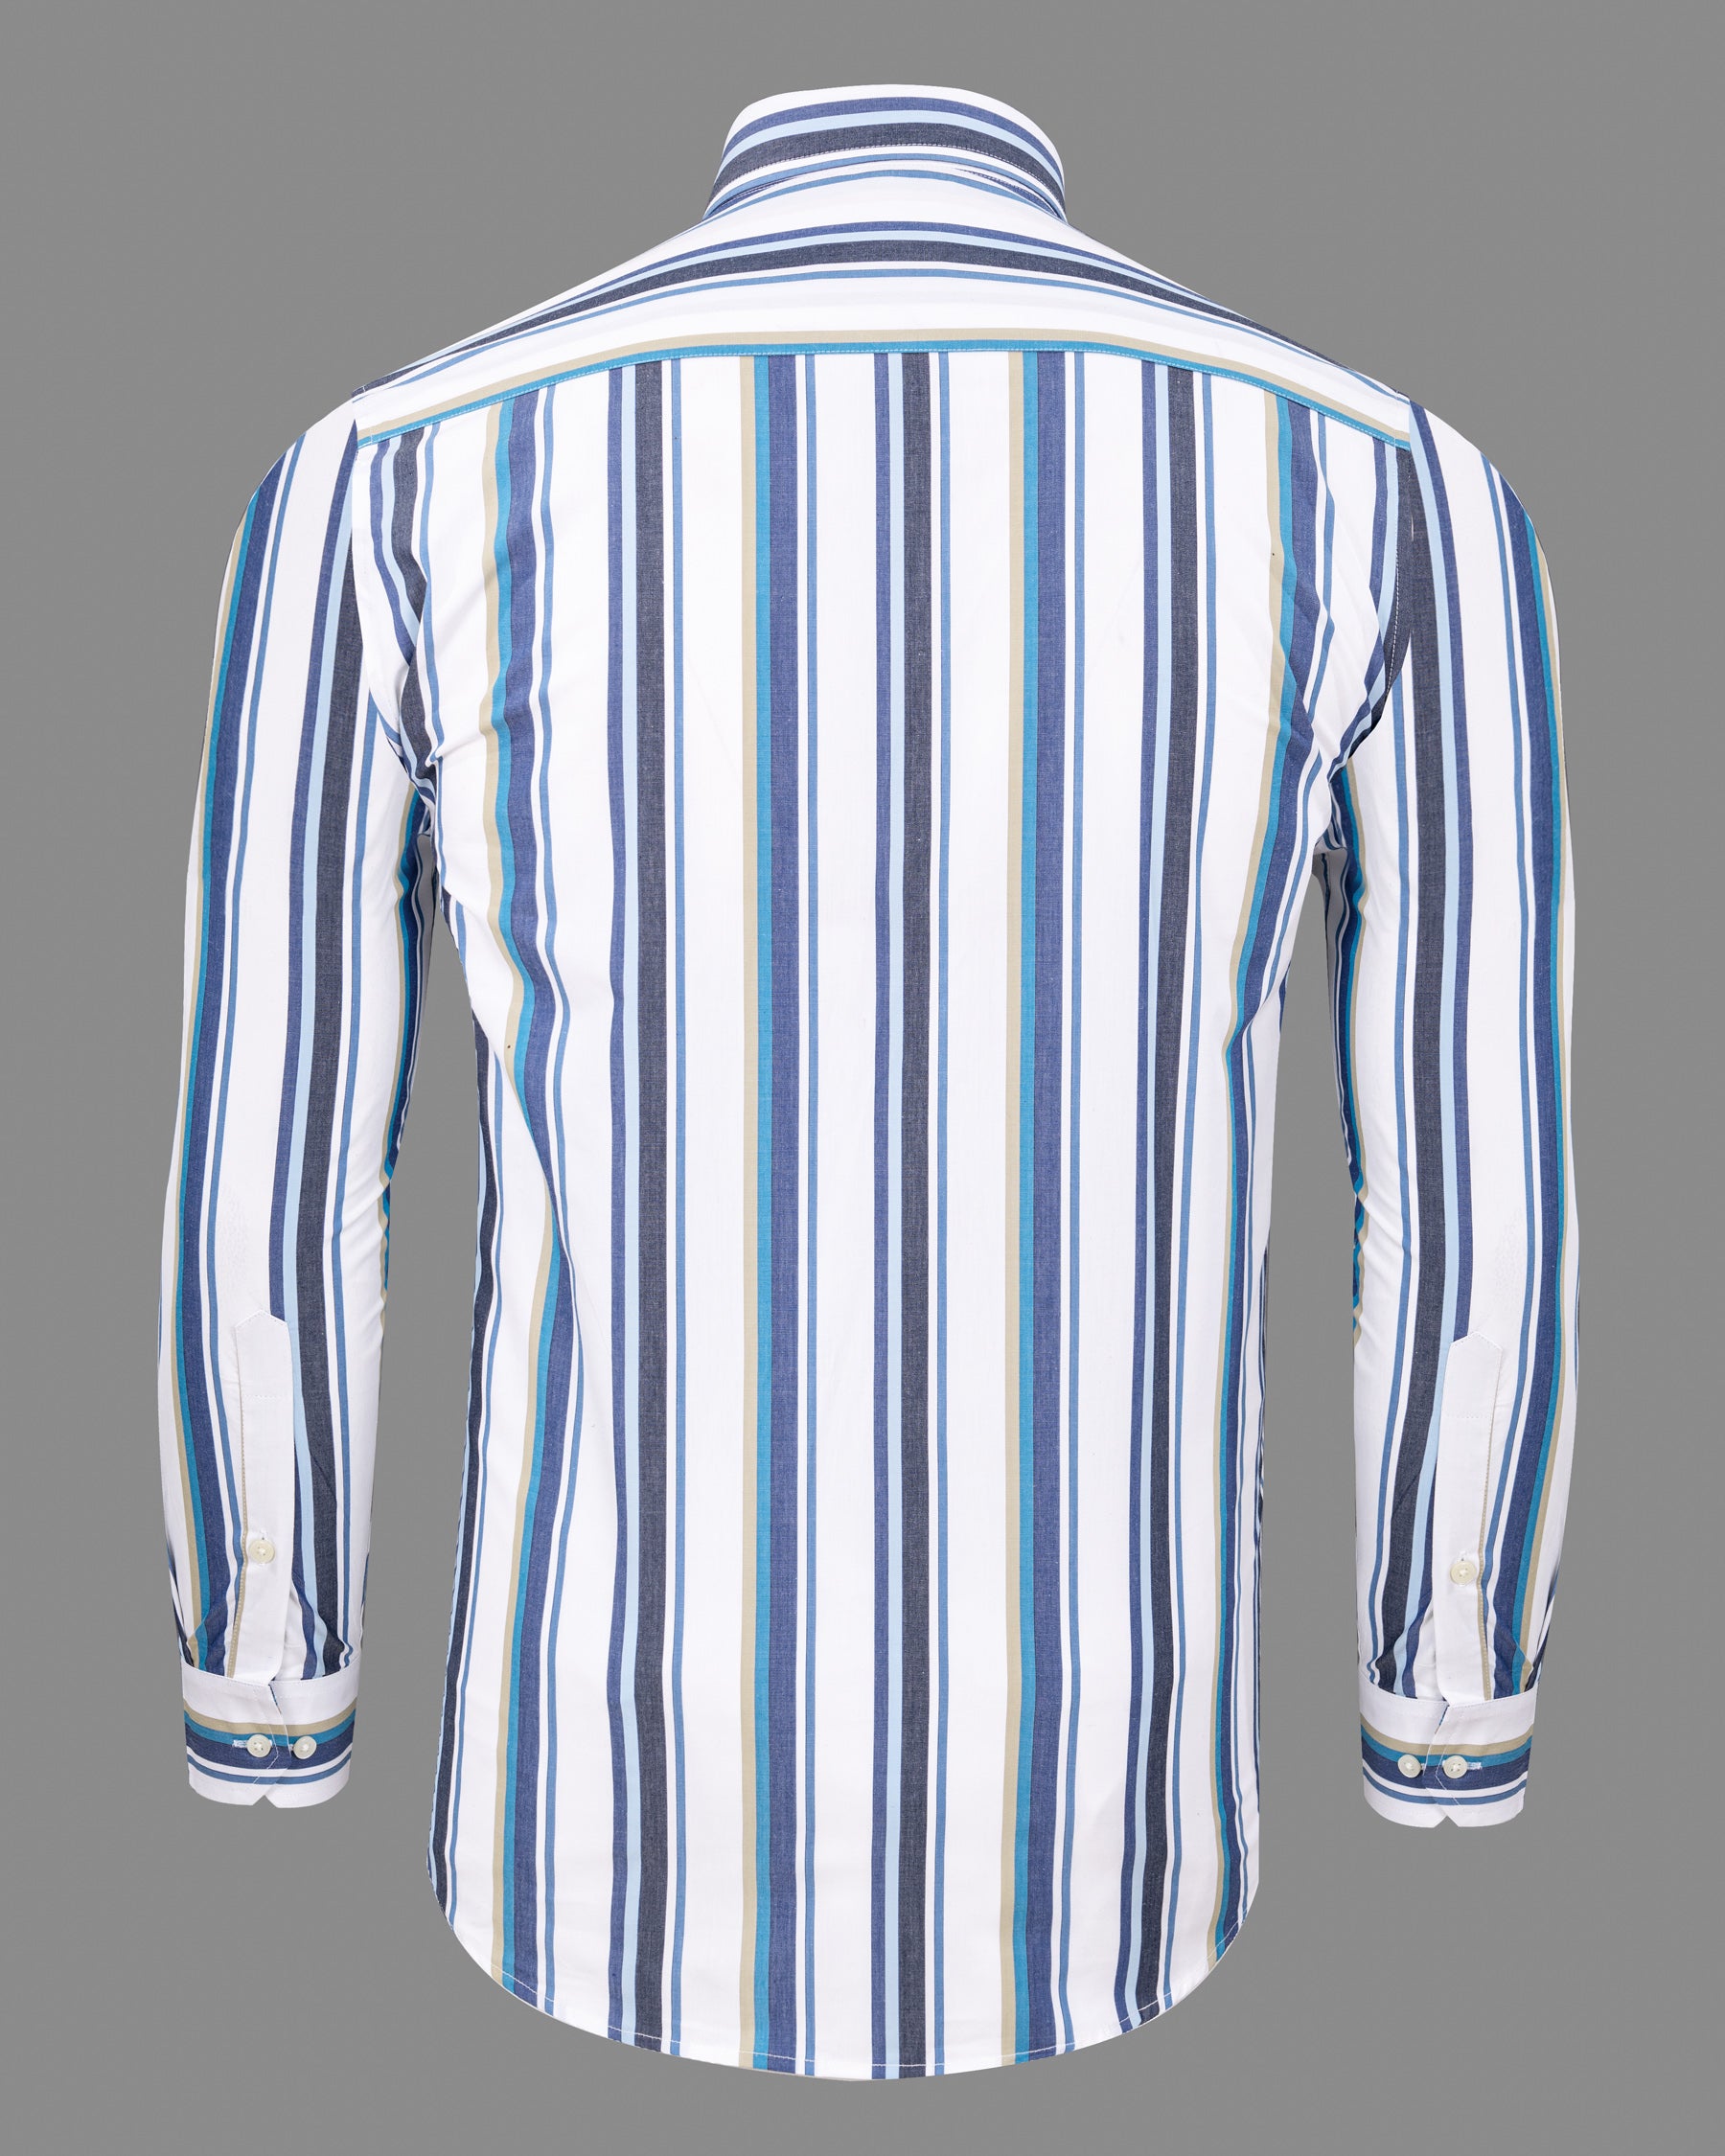 San Marino blue Retro striped Premium Cotton Shirt 5551-38, 5551-H-38, 5551-39, 5551-H-39, 5551-40, 5551-H-40, 5551-42, 5551-H-42, 5551-44, 5551-H-44, 5551-46, 5551-H-46, 5551-48, 5551-H-48, 5551-50, 5551-H-50, 5551-52, 5551-H-52